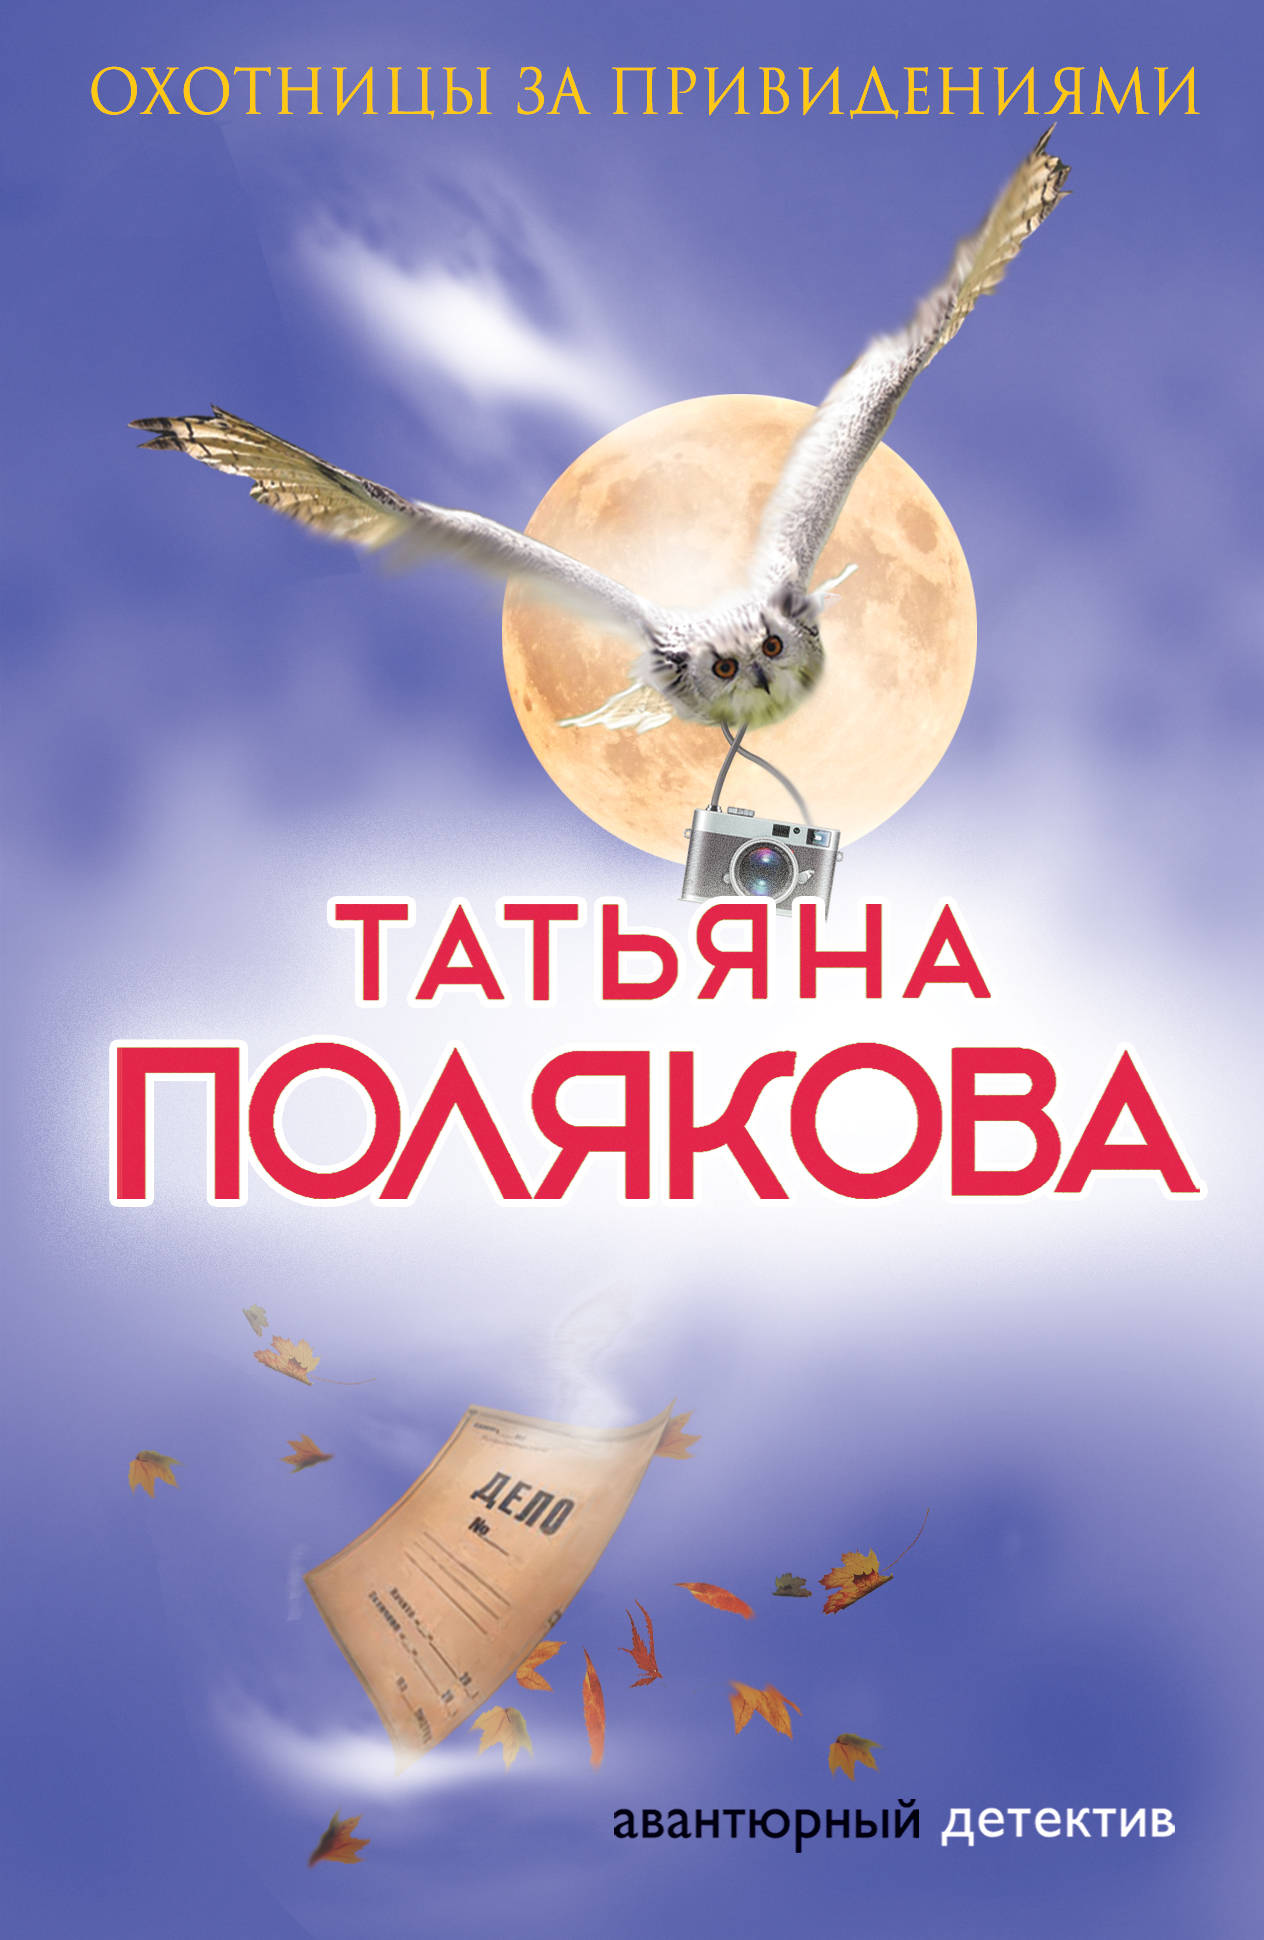 Охотницы за привидениями, Татьяна Полякова – скачать книгу fb2, epub, pdf на ЛитРес